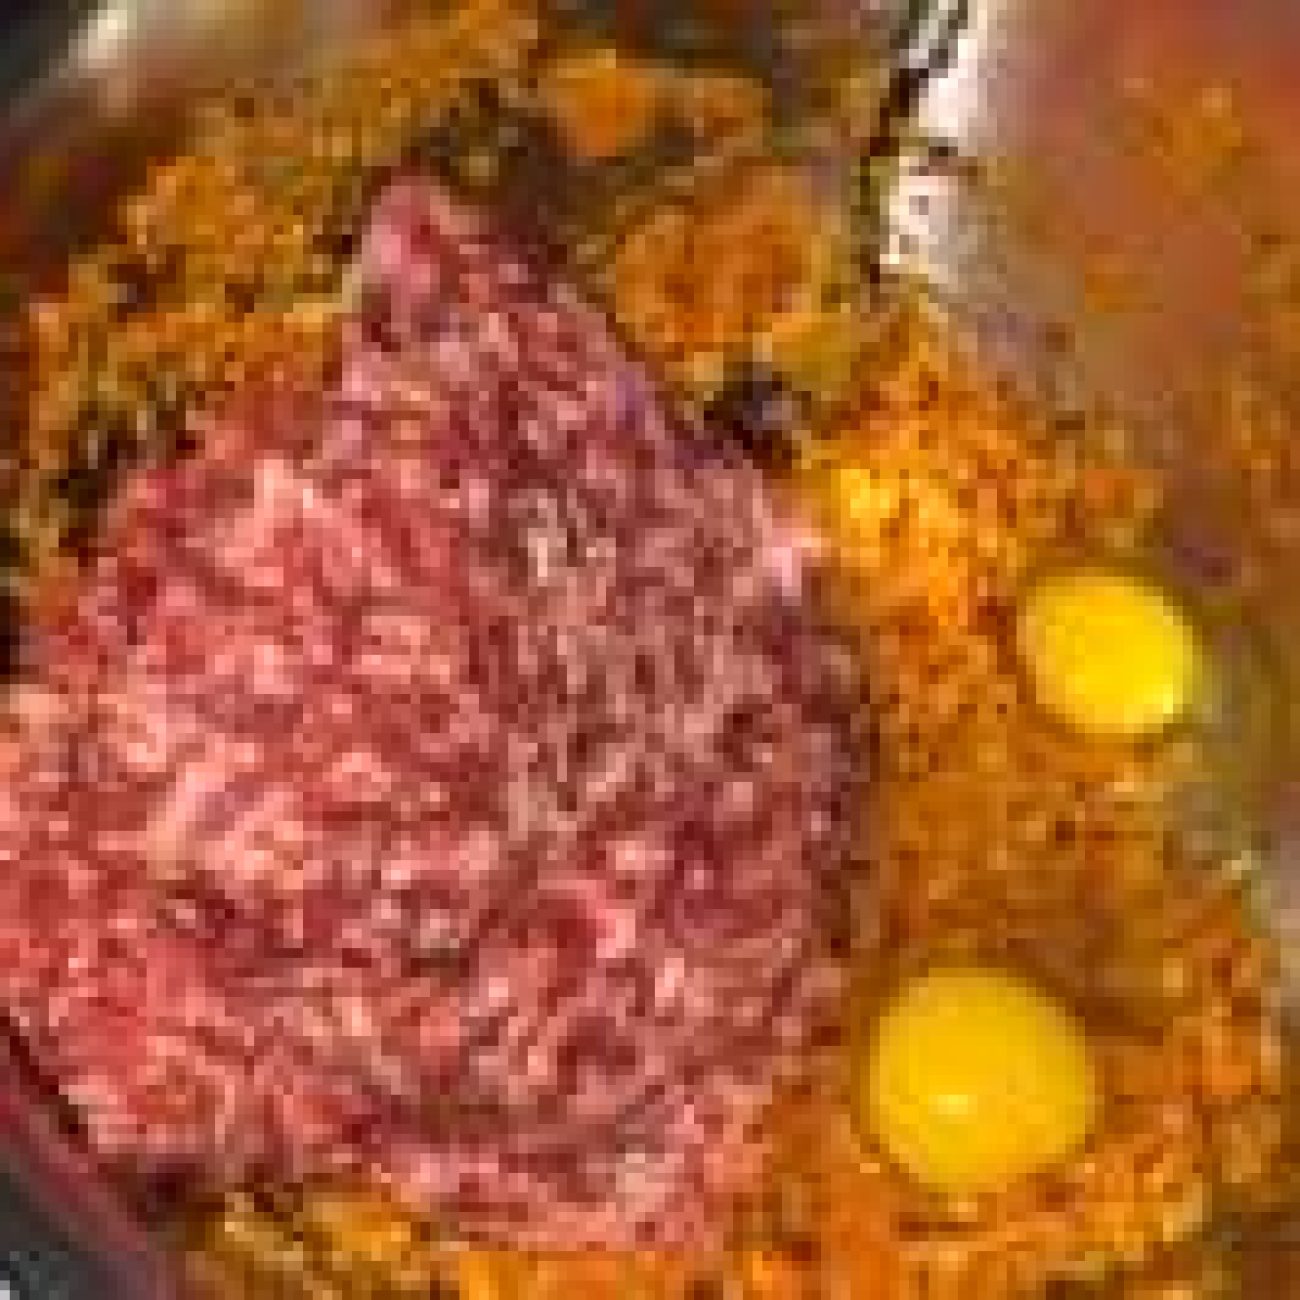 Carrot Satay Meatballs Using Vegemite